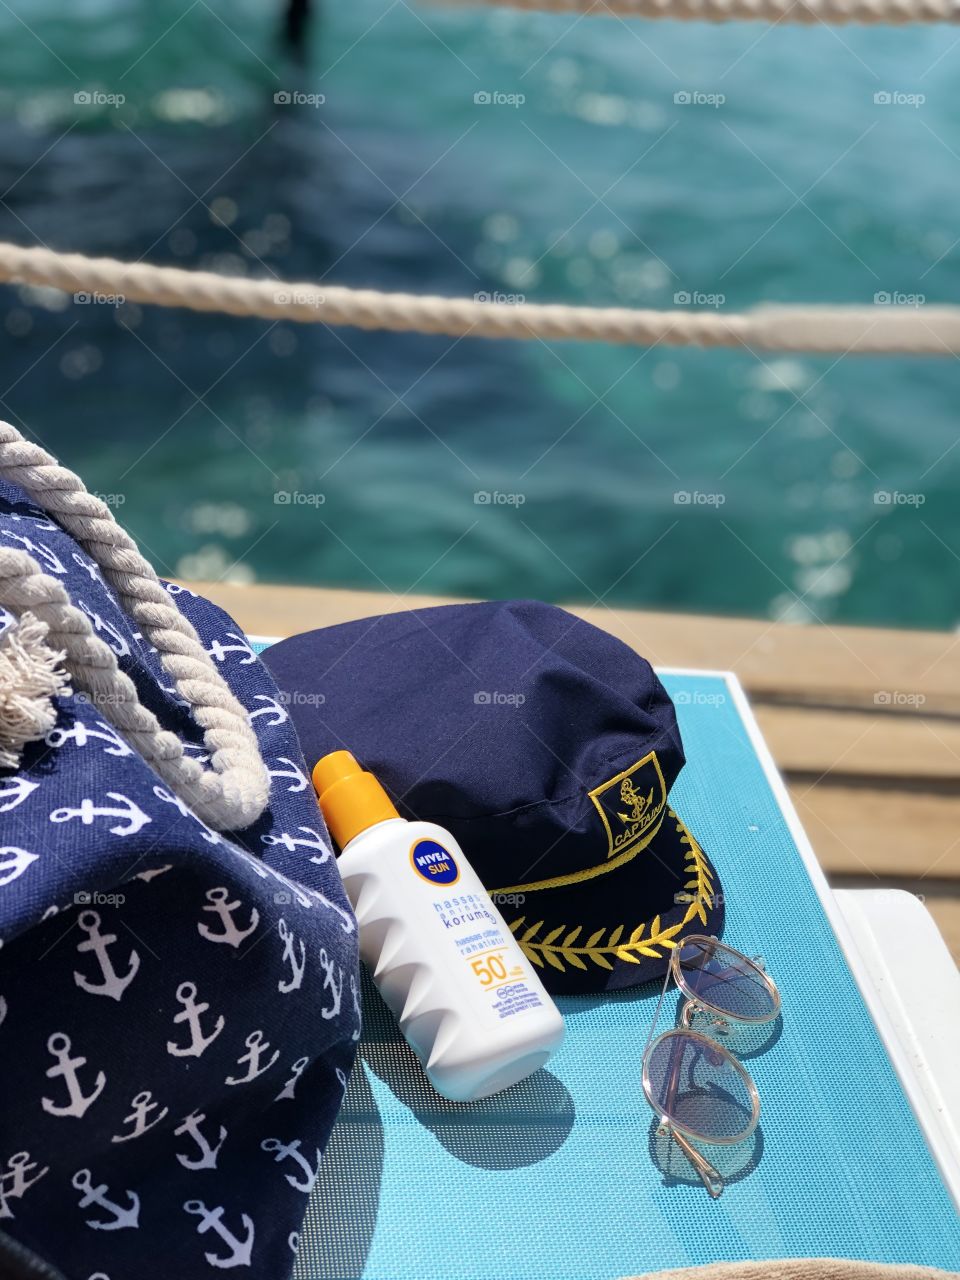 nivea cream on sea beach with bag